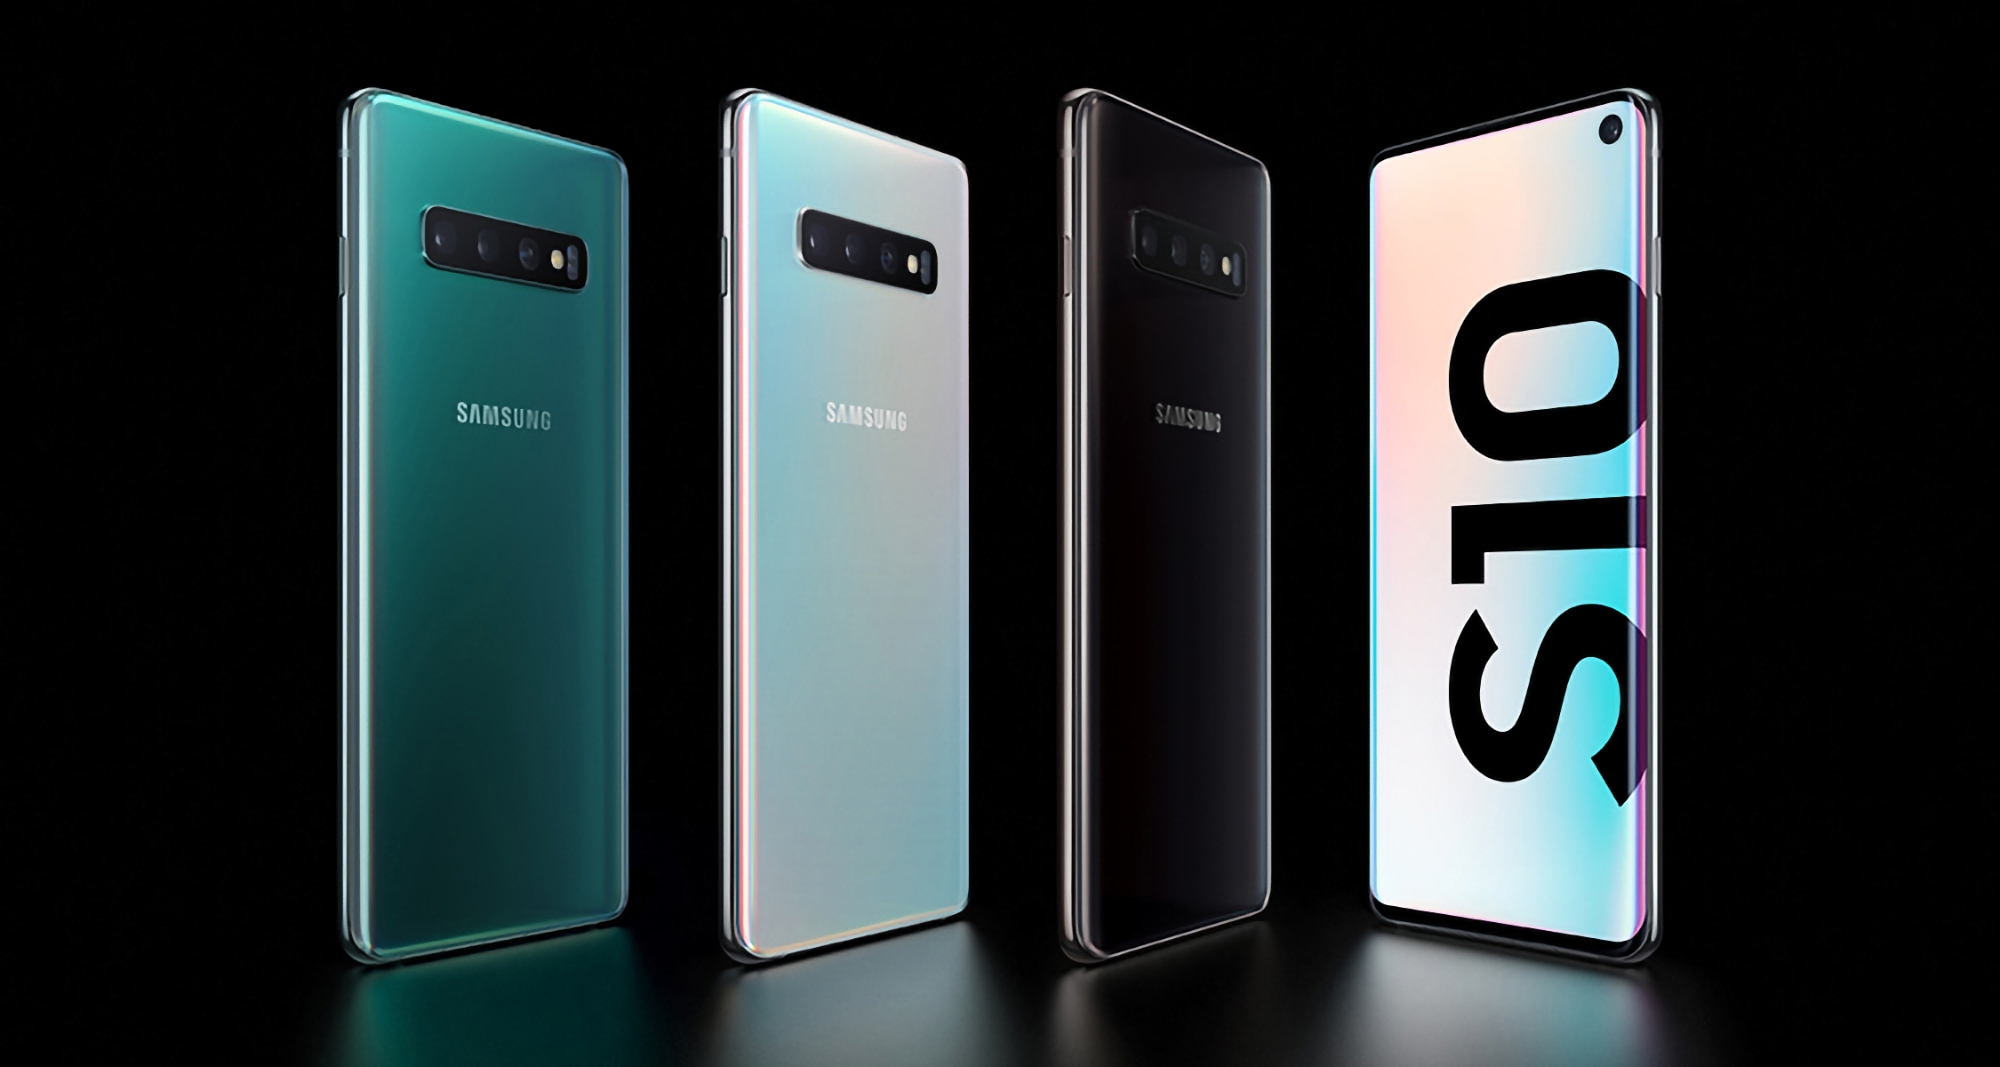 Samsung poprawił aparaty smartfonów Galaxy S10, Galaxy S10+ i Galaxy S10e dzięki aktualizacji